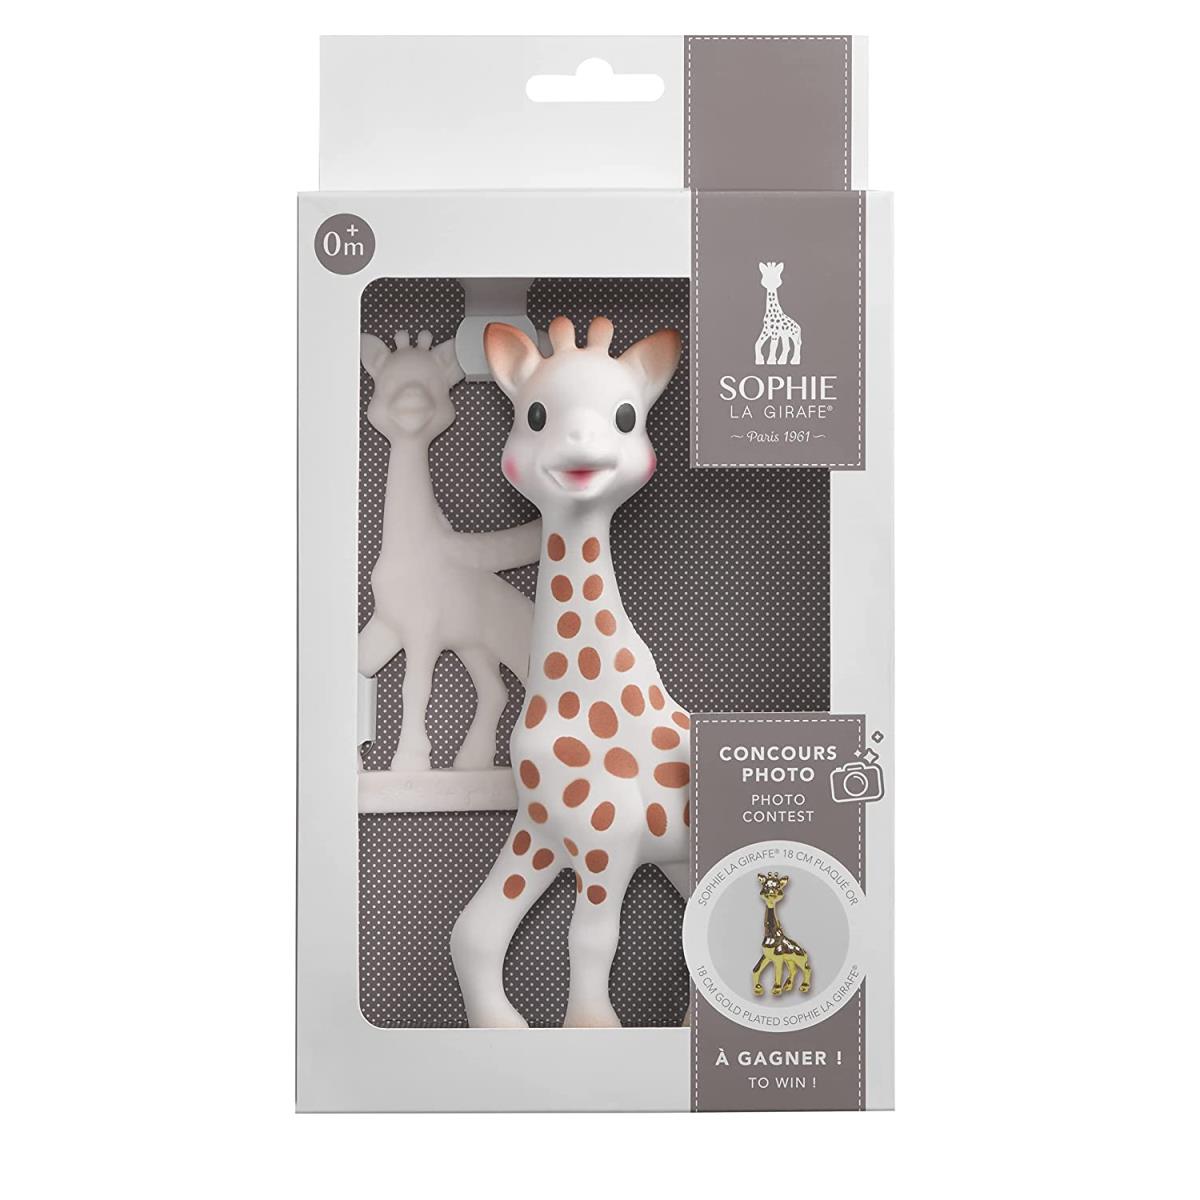 Vulli Sophie La Girafe Set Baby Beißring und Giraffe Babyset Zahnungshilfe,SOPHIE LA GIRAFE,516510.0, 3056565165101